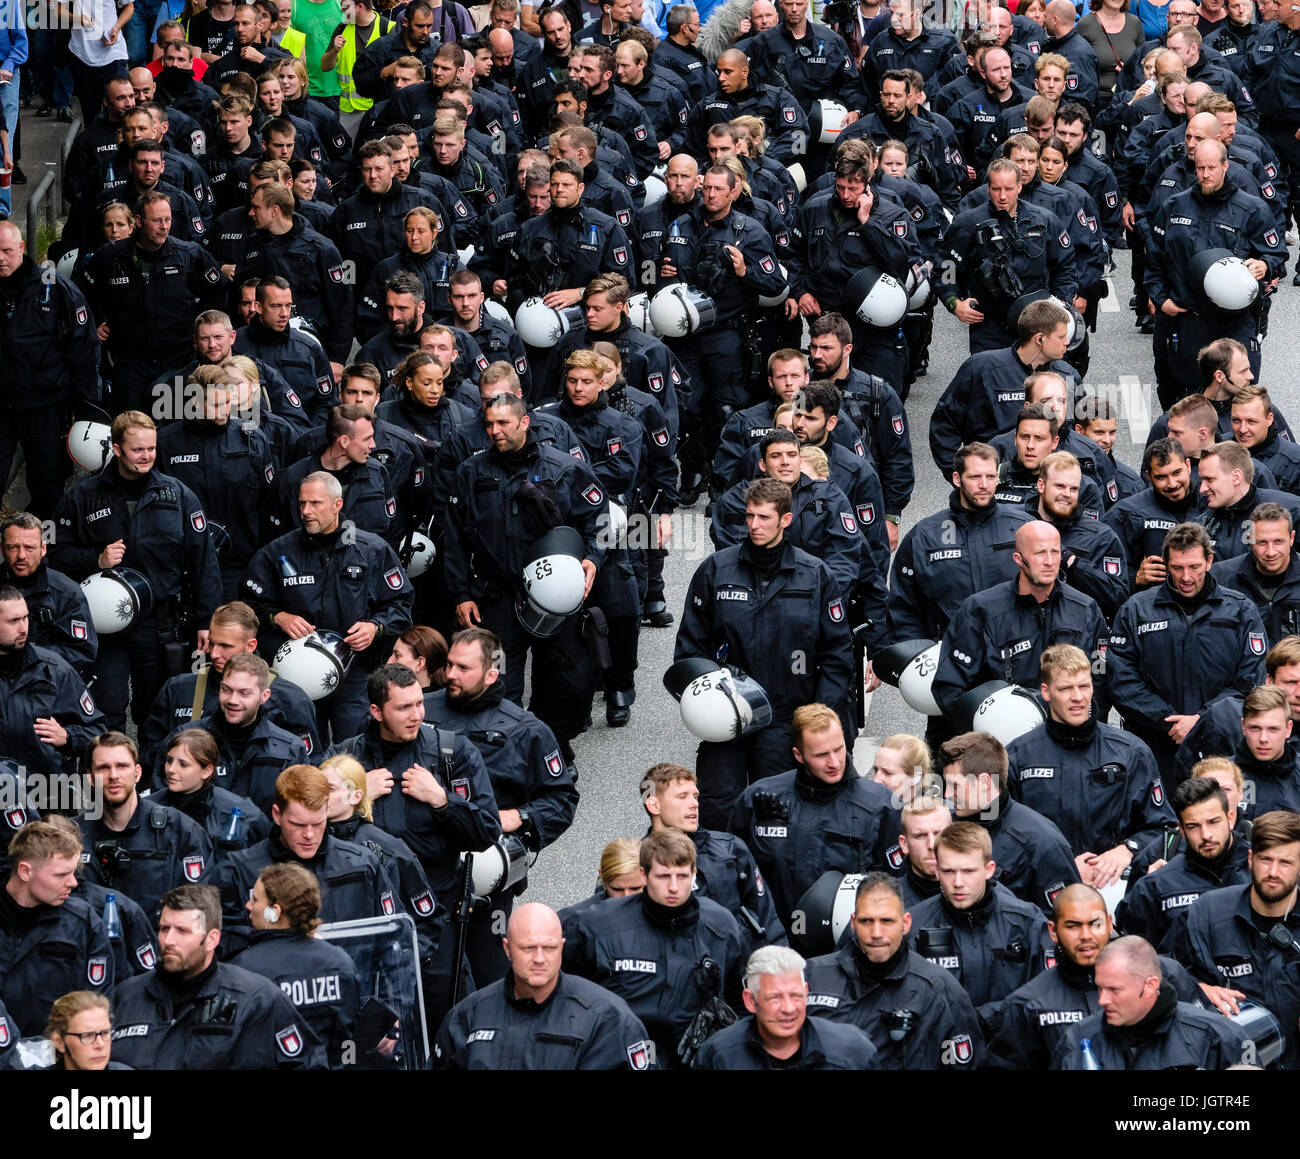 8 juillet, 2017. Hambourg, Allemagne. Grande manifestation marche à travers le centre d'Hambourg pour protester contre le sommet du G20 dans la ville. Ici grand groupe de policiers Banque D'Images